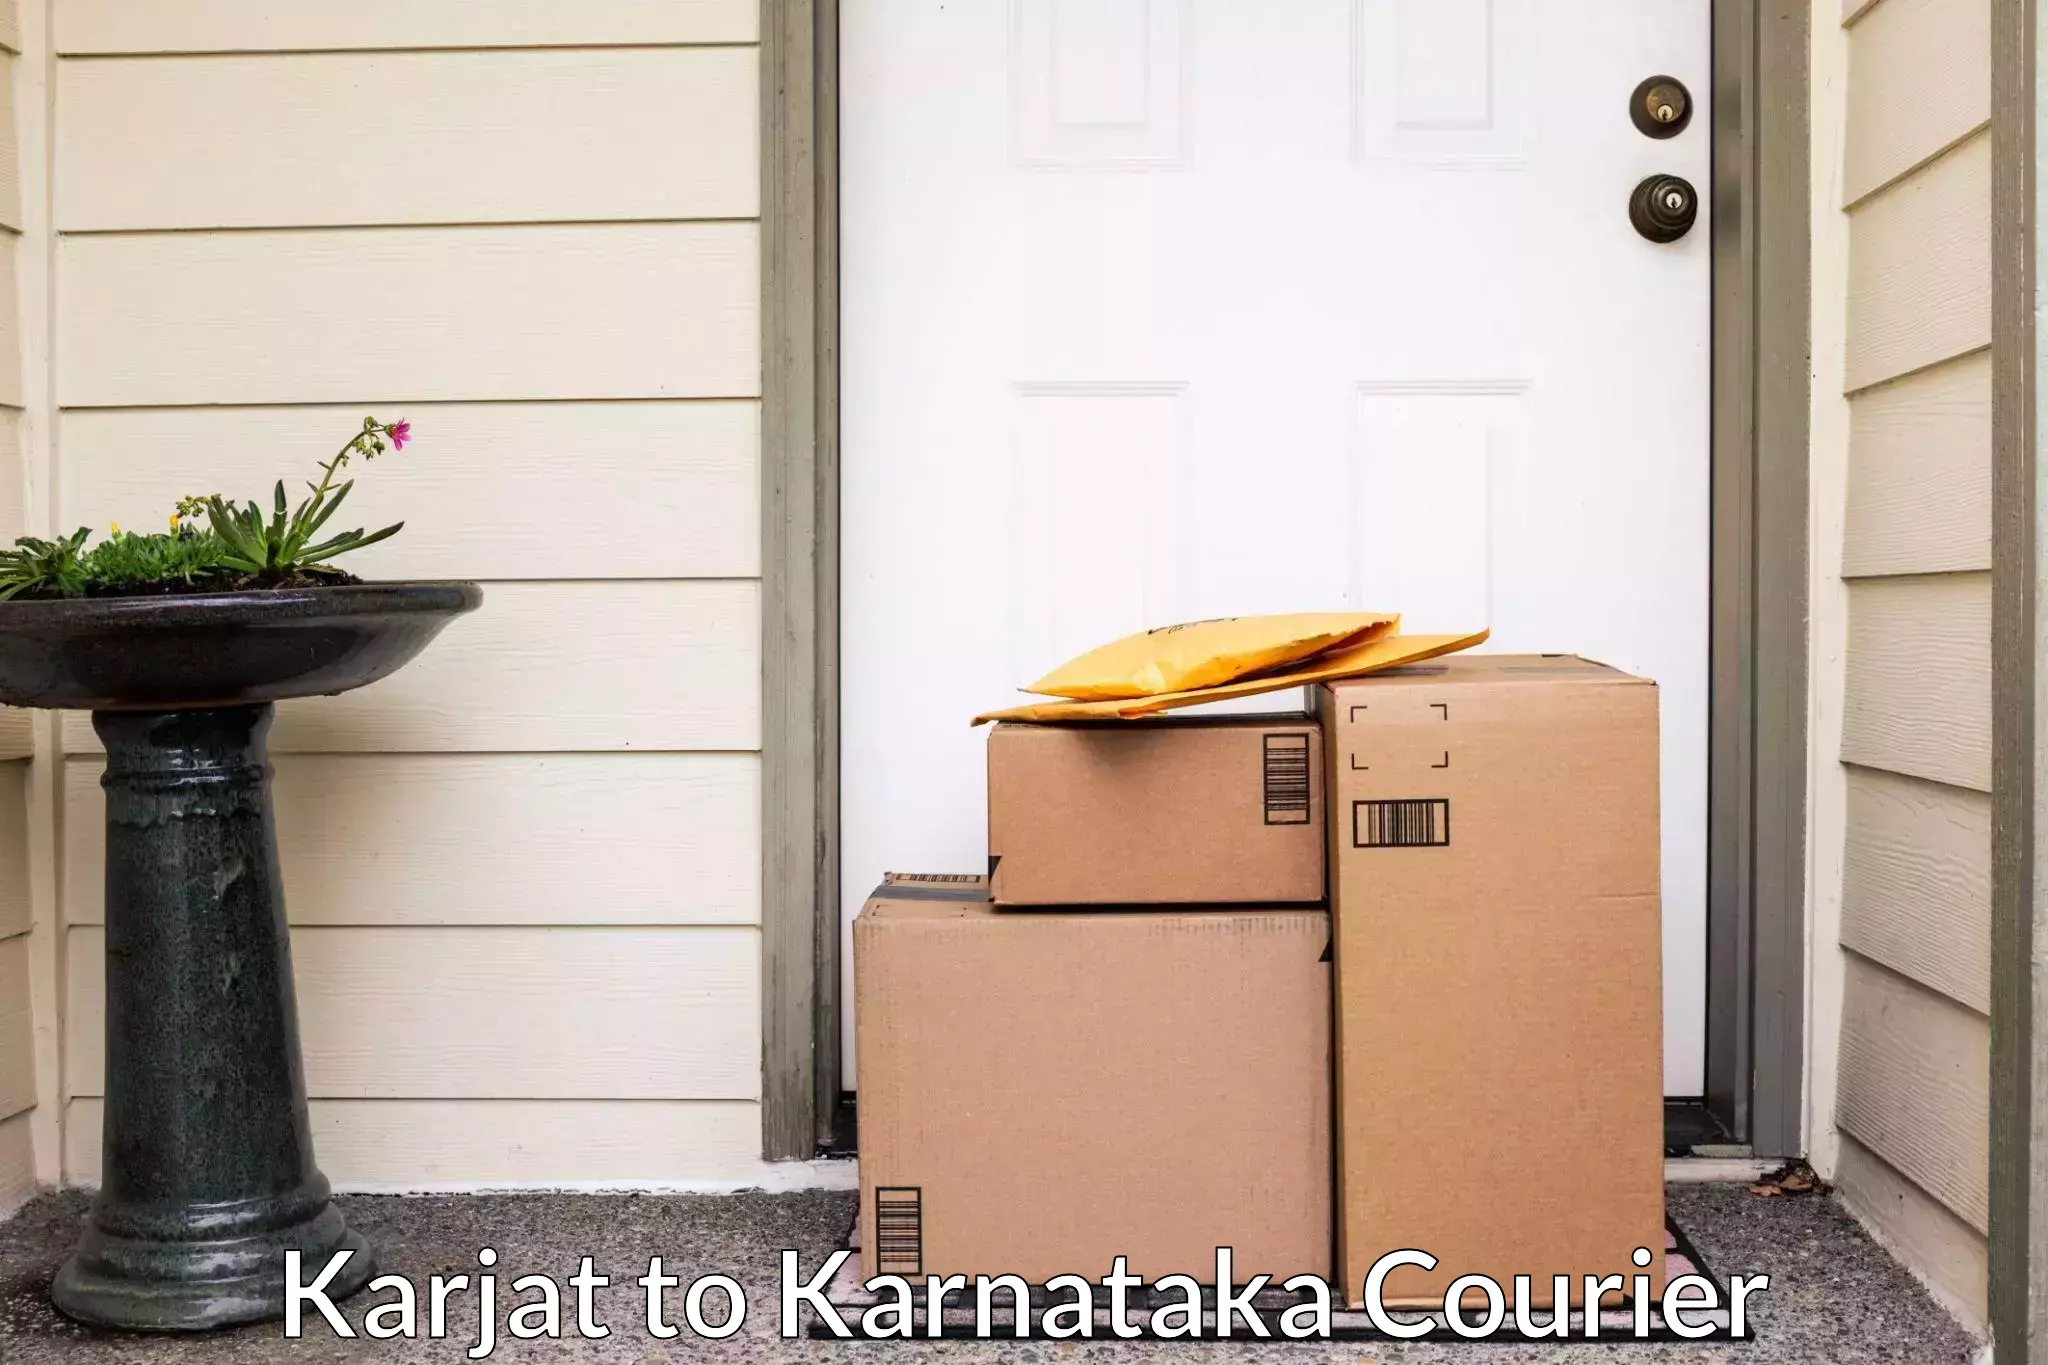 Furniture moving assistance Karjat to Karnataka